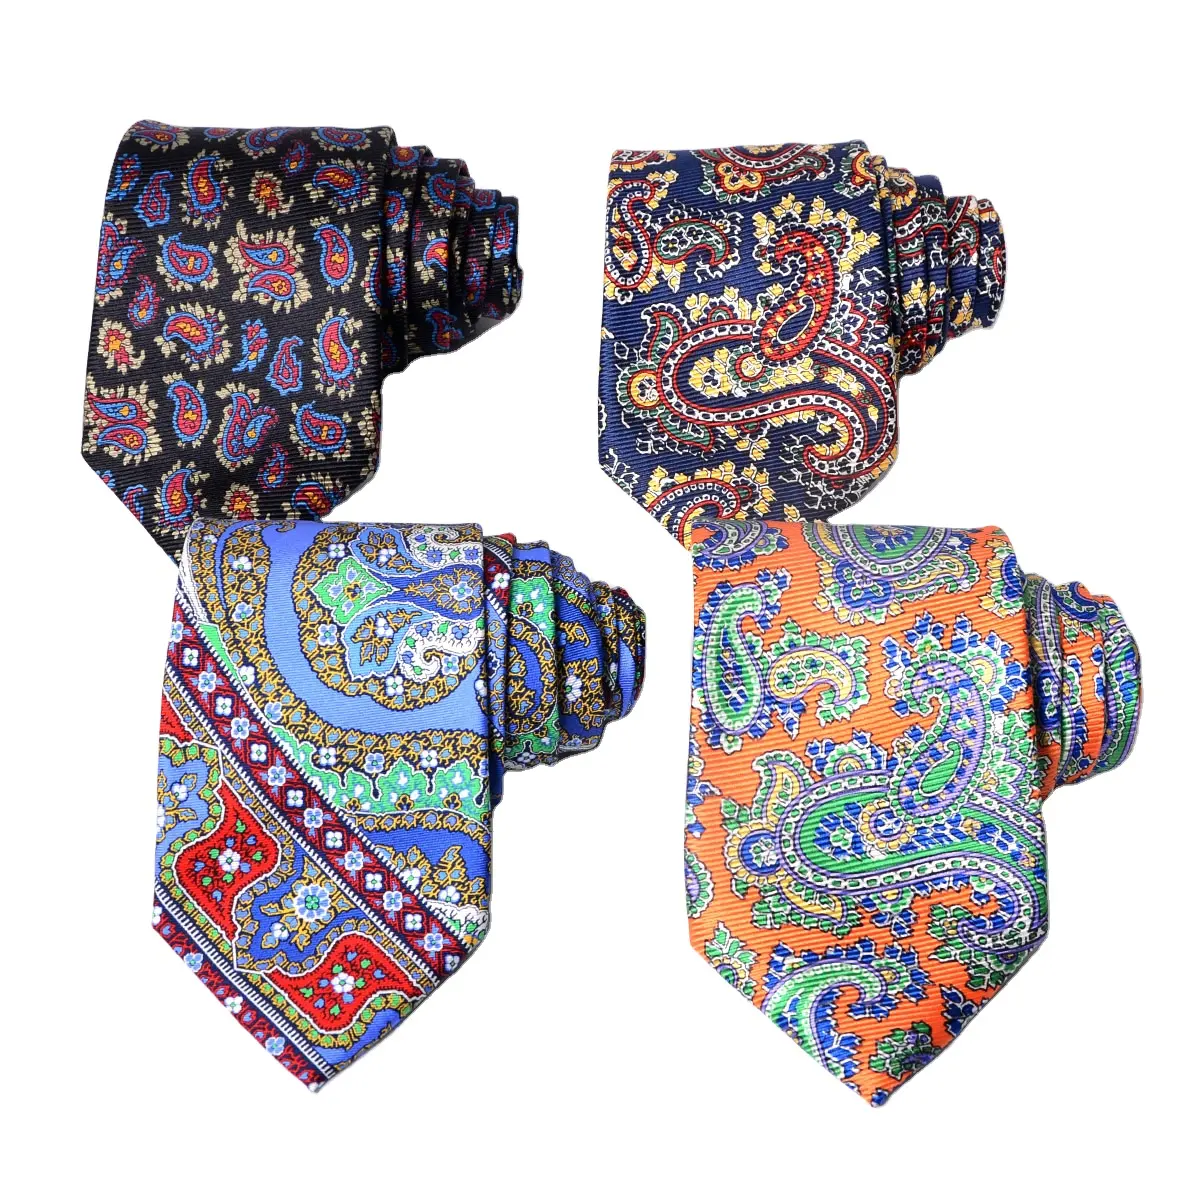 Tecido artesanal de impressão da tela dos homens personalizados para gravatas de seda